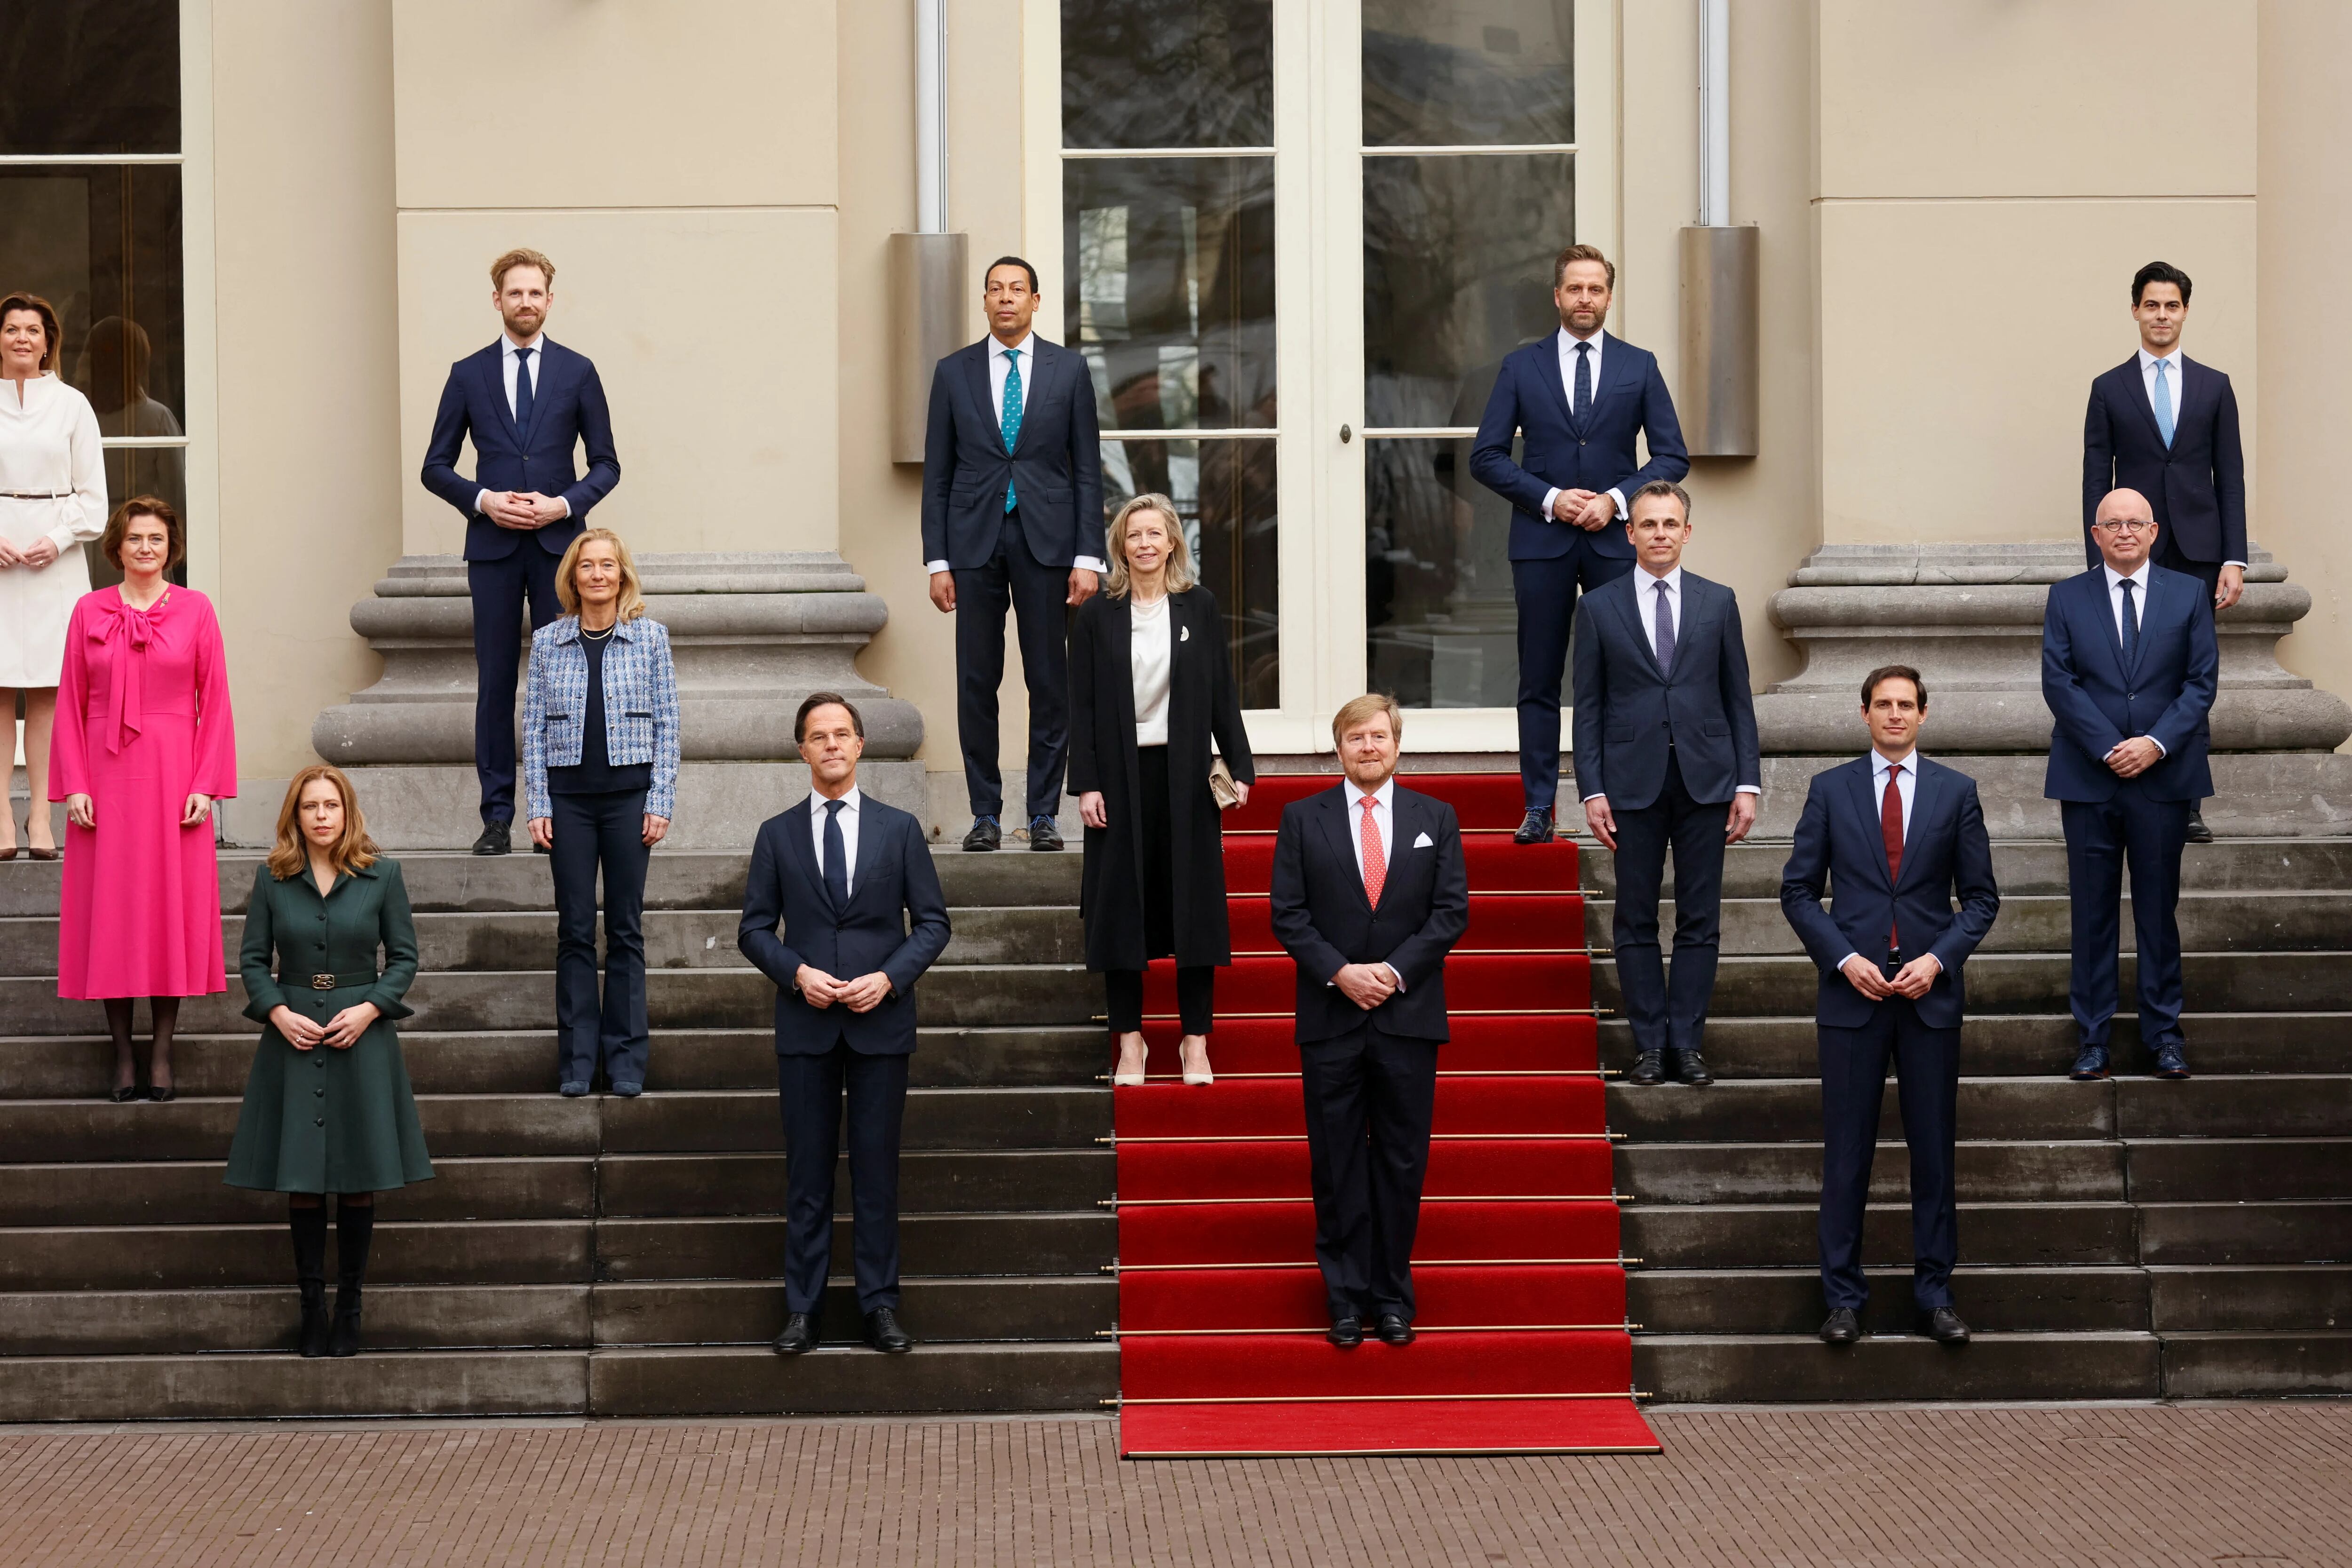 El actual gobierno asumió en enero de 2022. En la imagen, la administración junto al rey Guillermo en La Haya (Sem van der Wal/Pool via REUTERS)